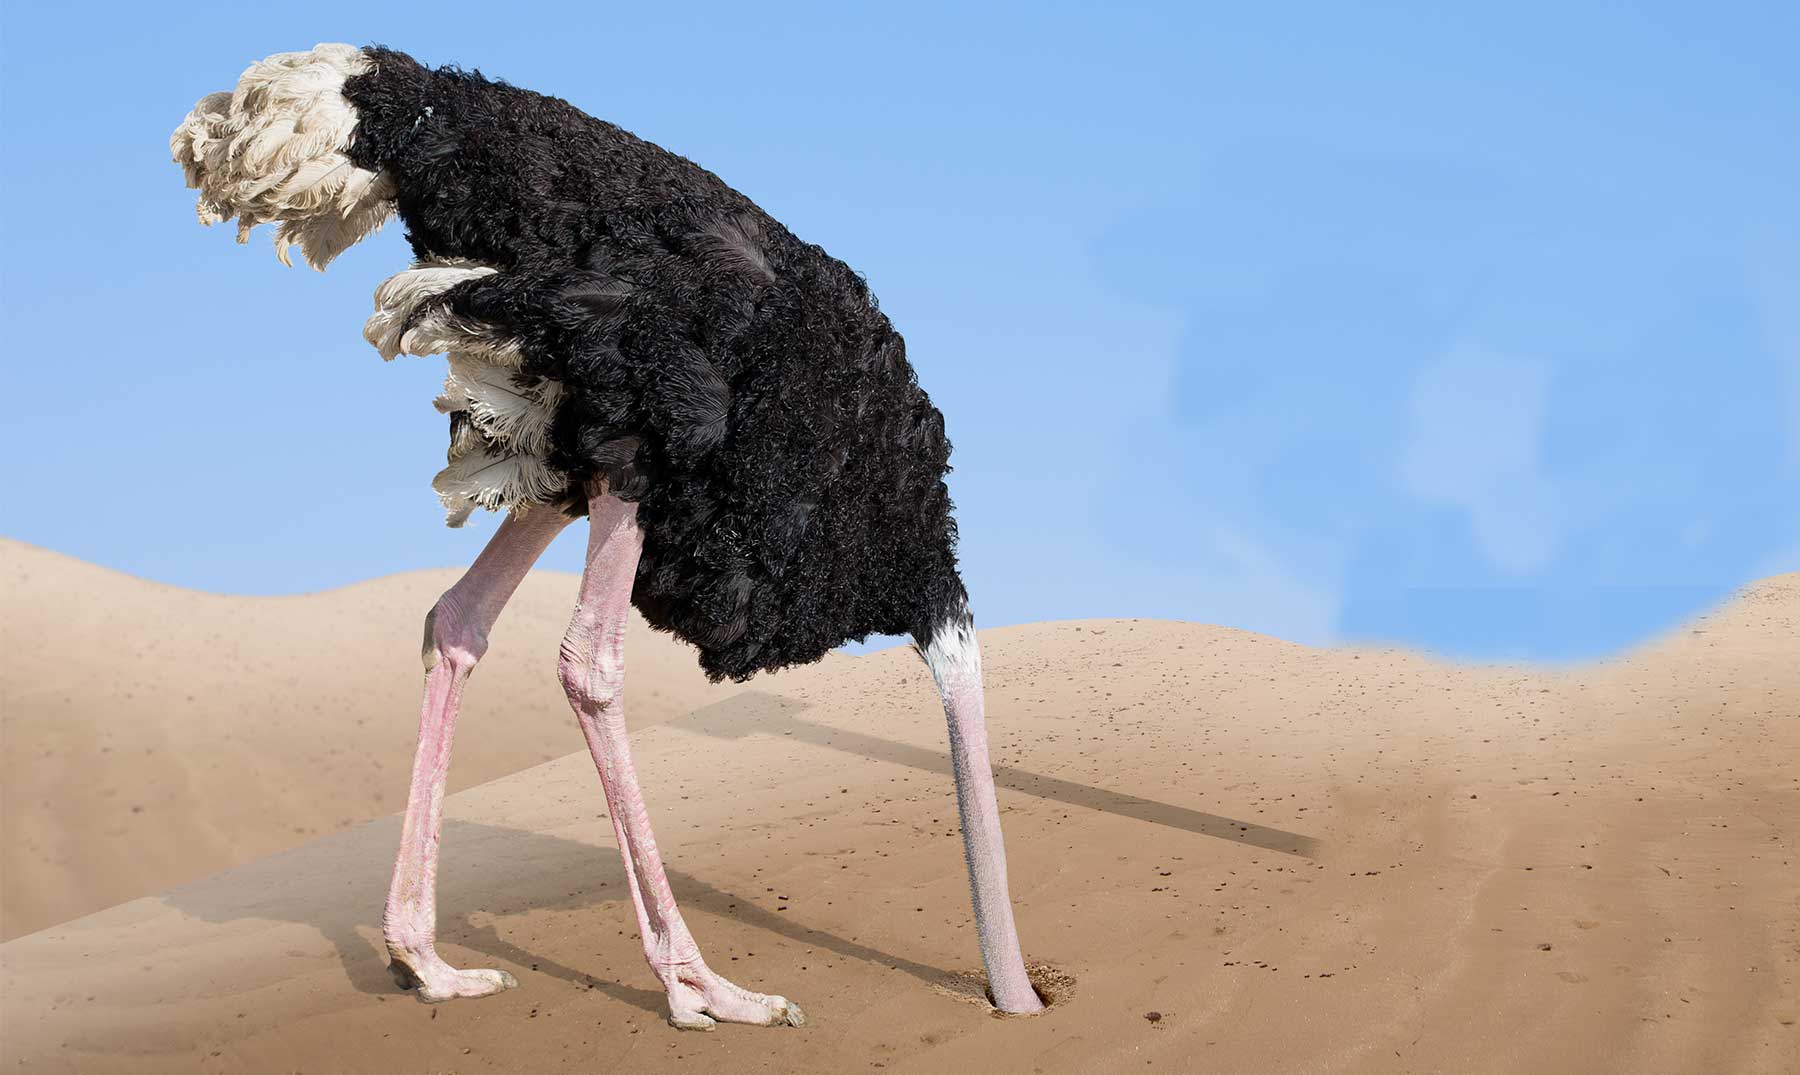 El avestruz esconde la cabeza bajo tierra? | La verdad de este mito